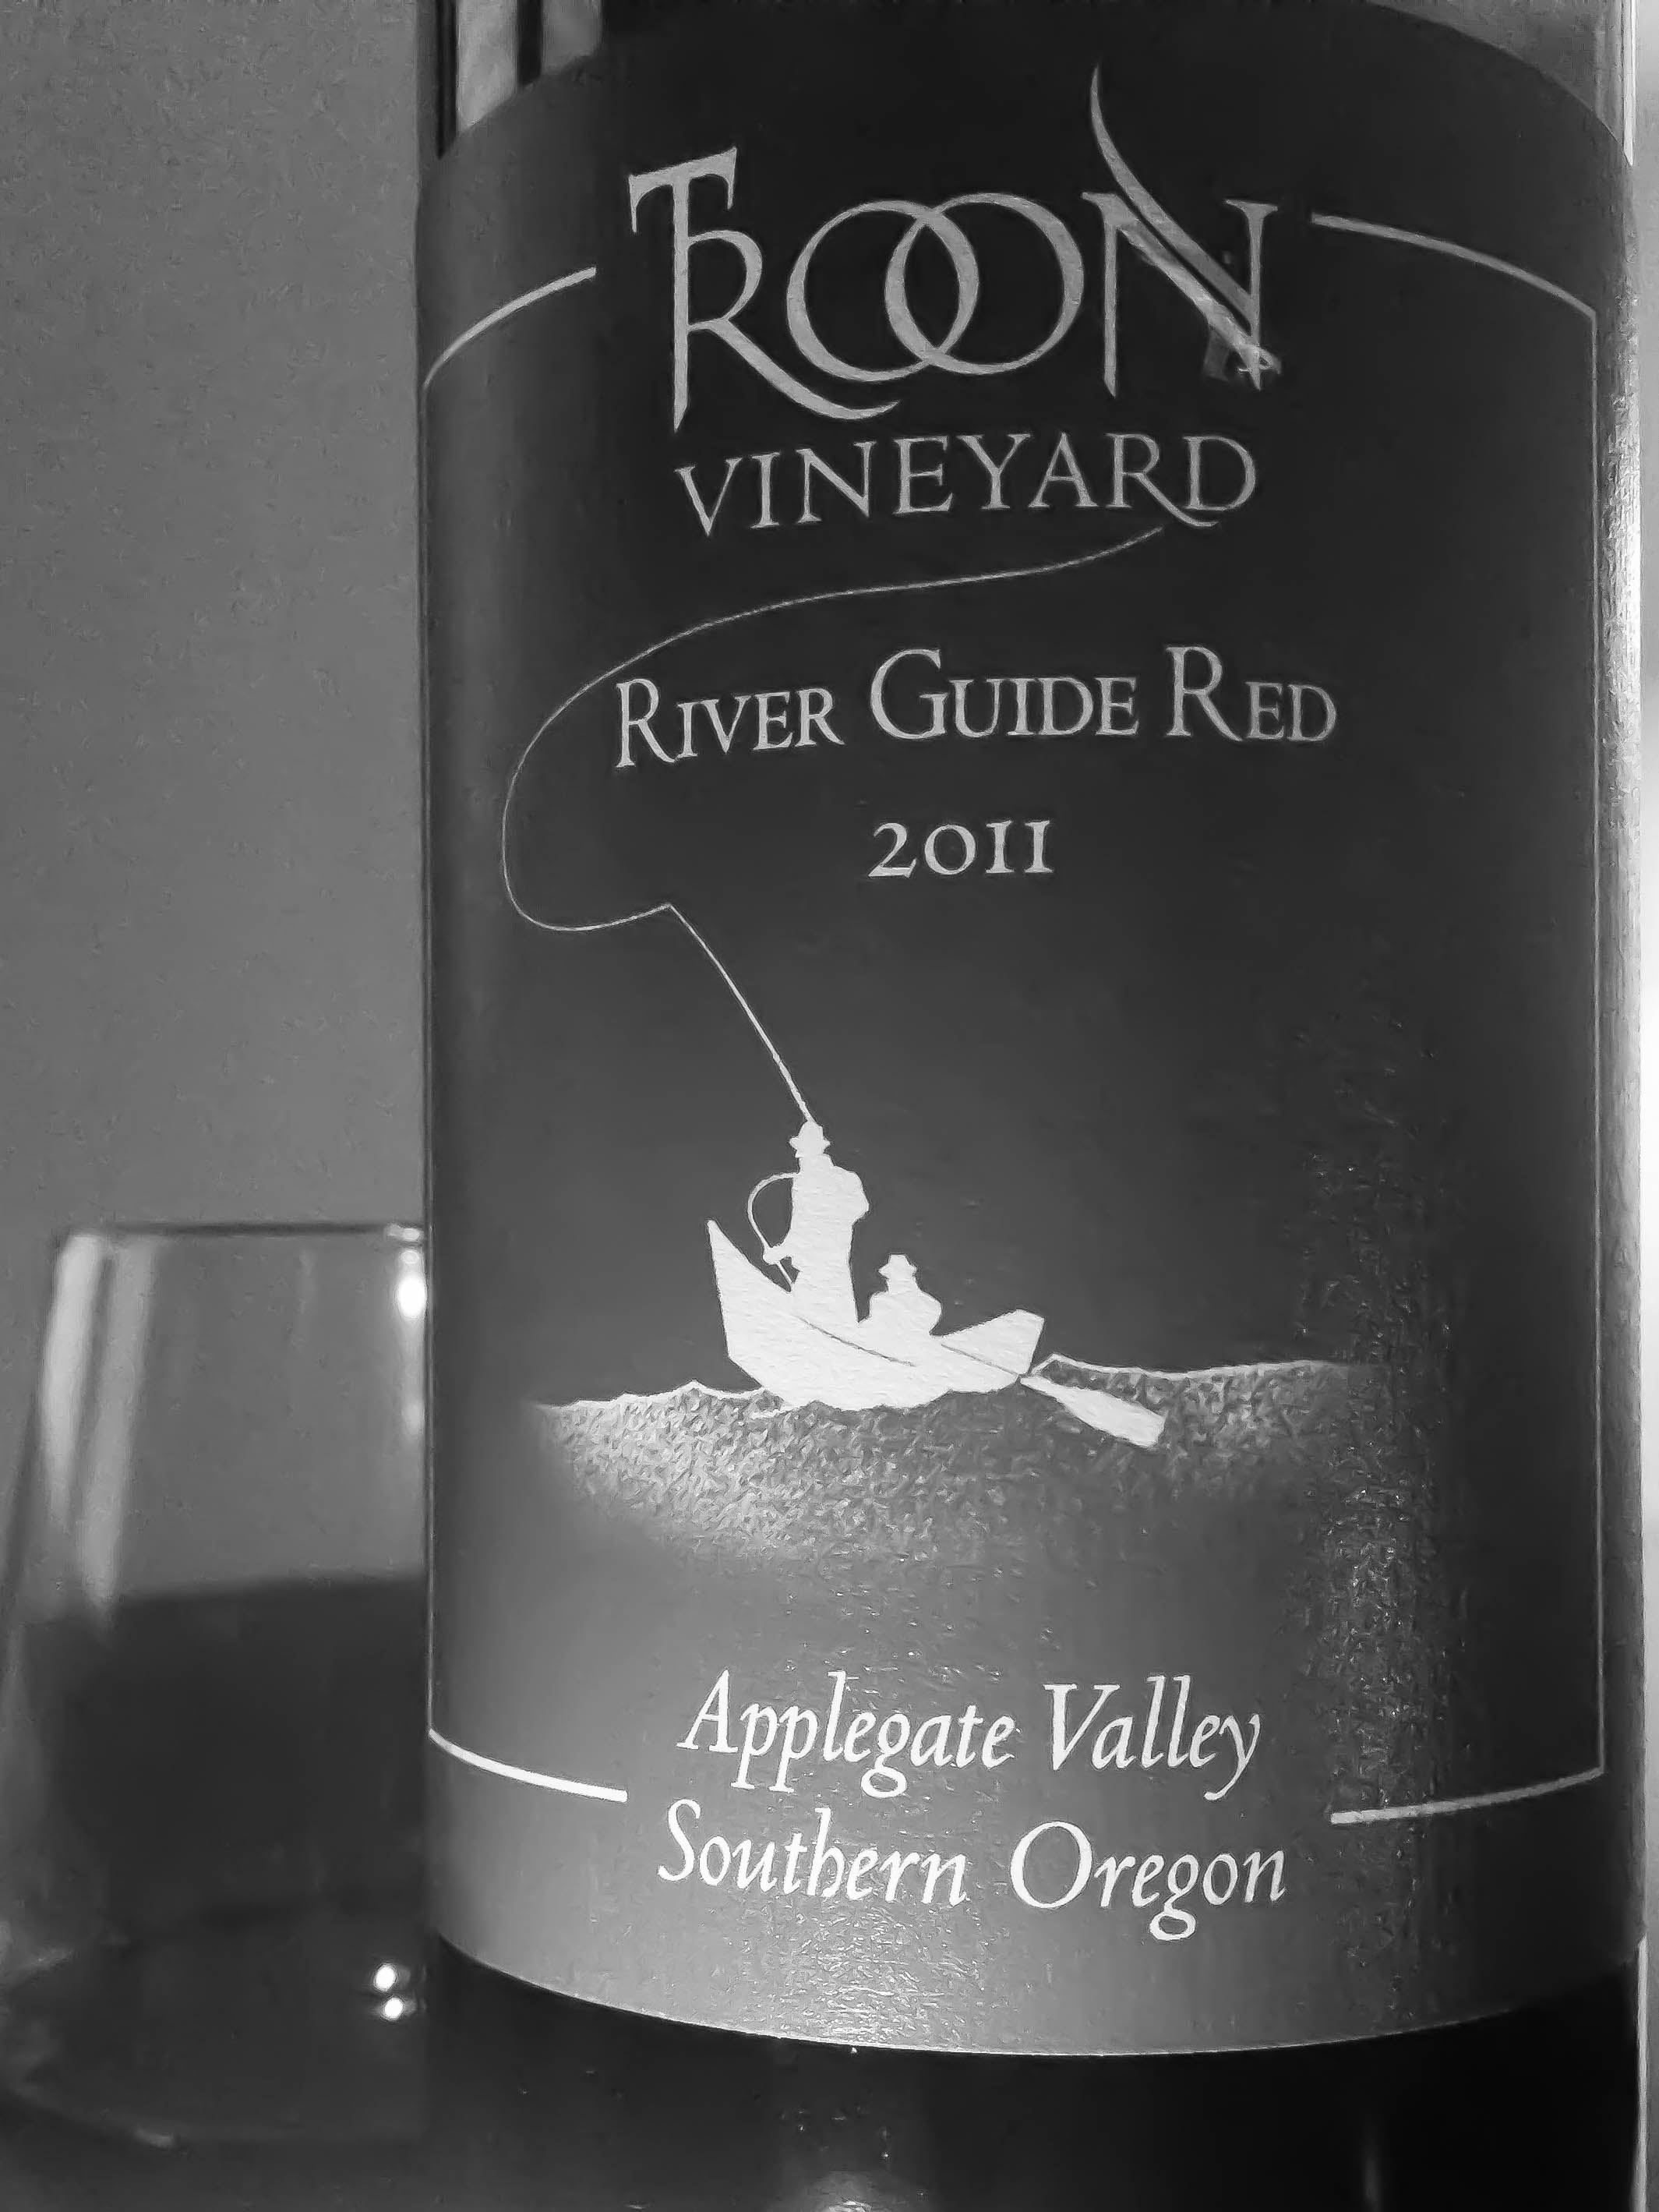 Oregon Applgate Valley Red Wine TROON Vineyard